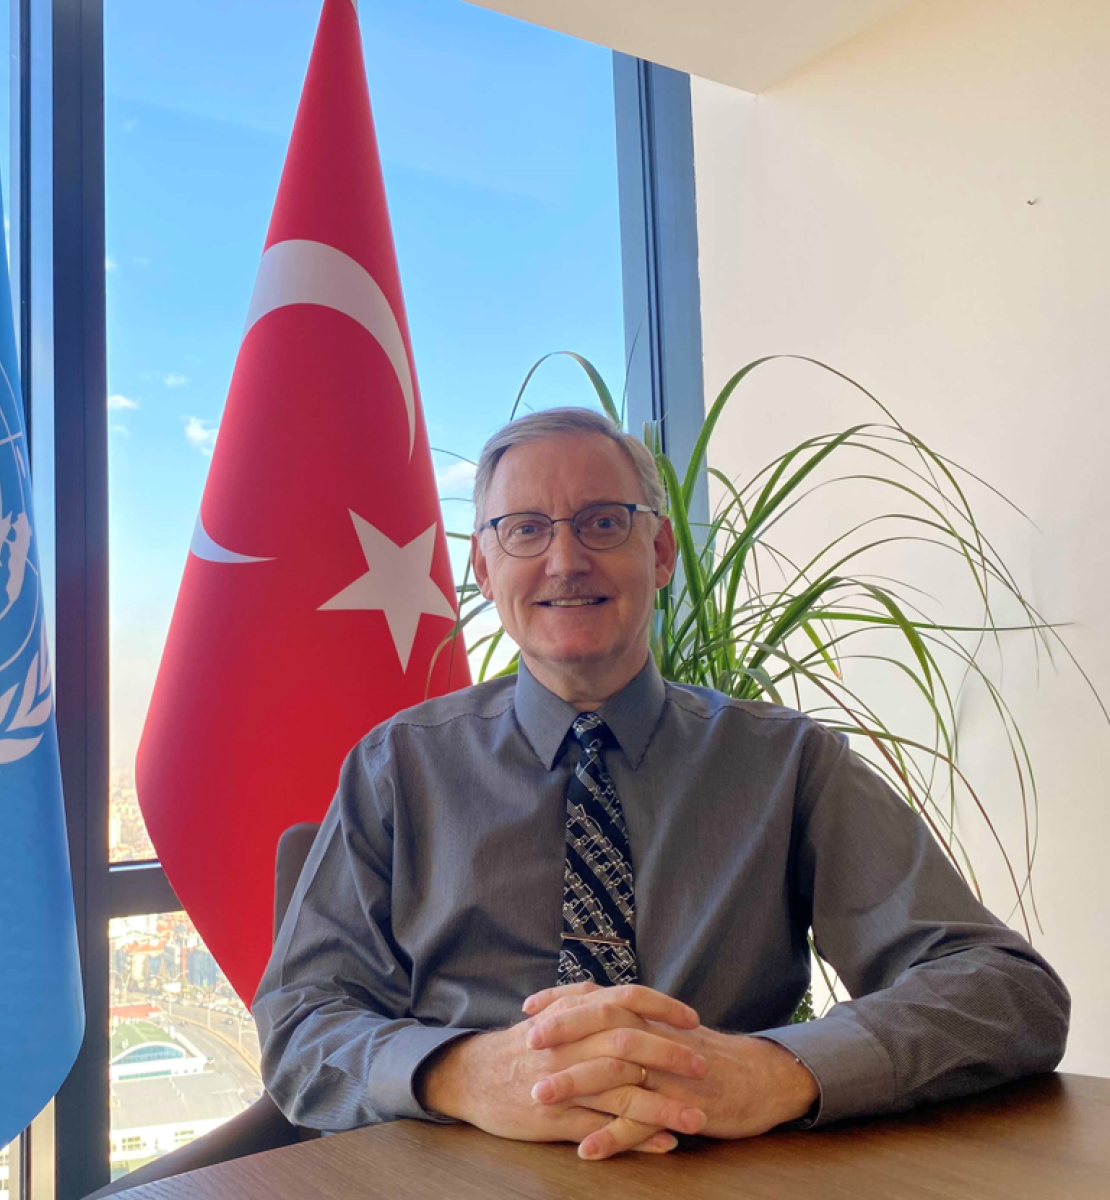 صورة رسمية للمنسق المقيم الجديد لتركيا، ألفارو رودريغيز وهو يجلس على مكتب ويبتسم أمام علمي الأمم المتحدة وتركيا.